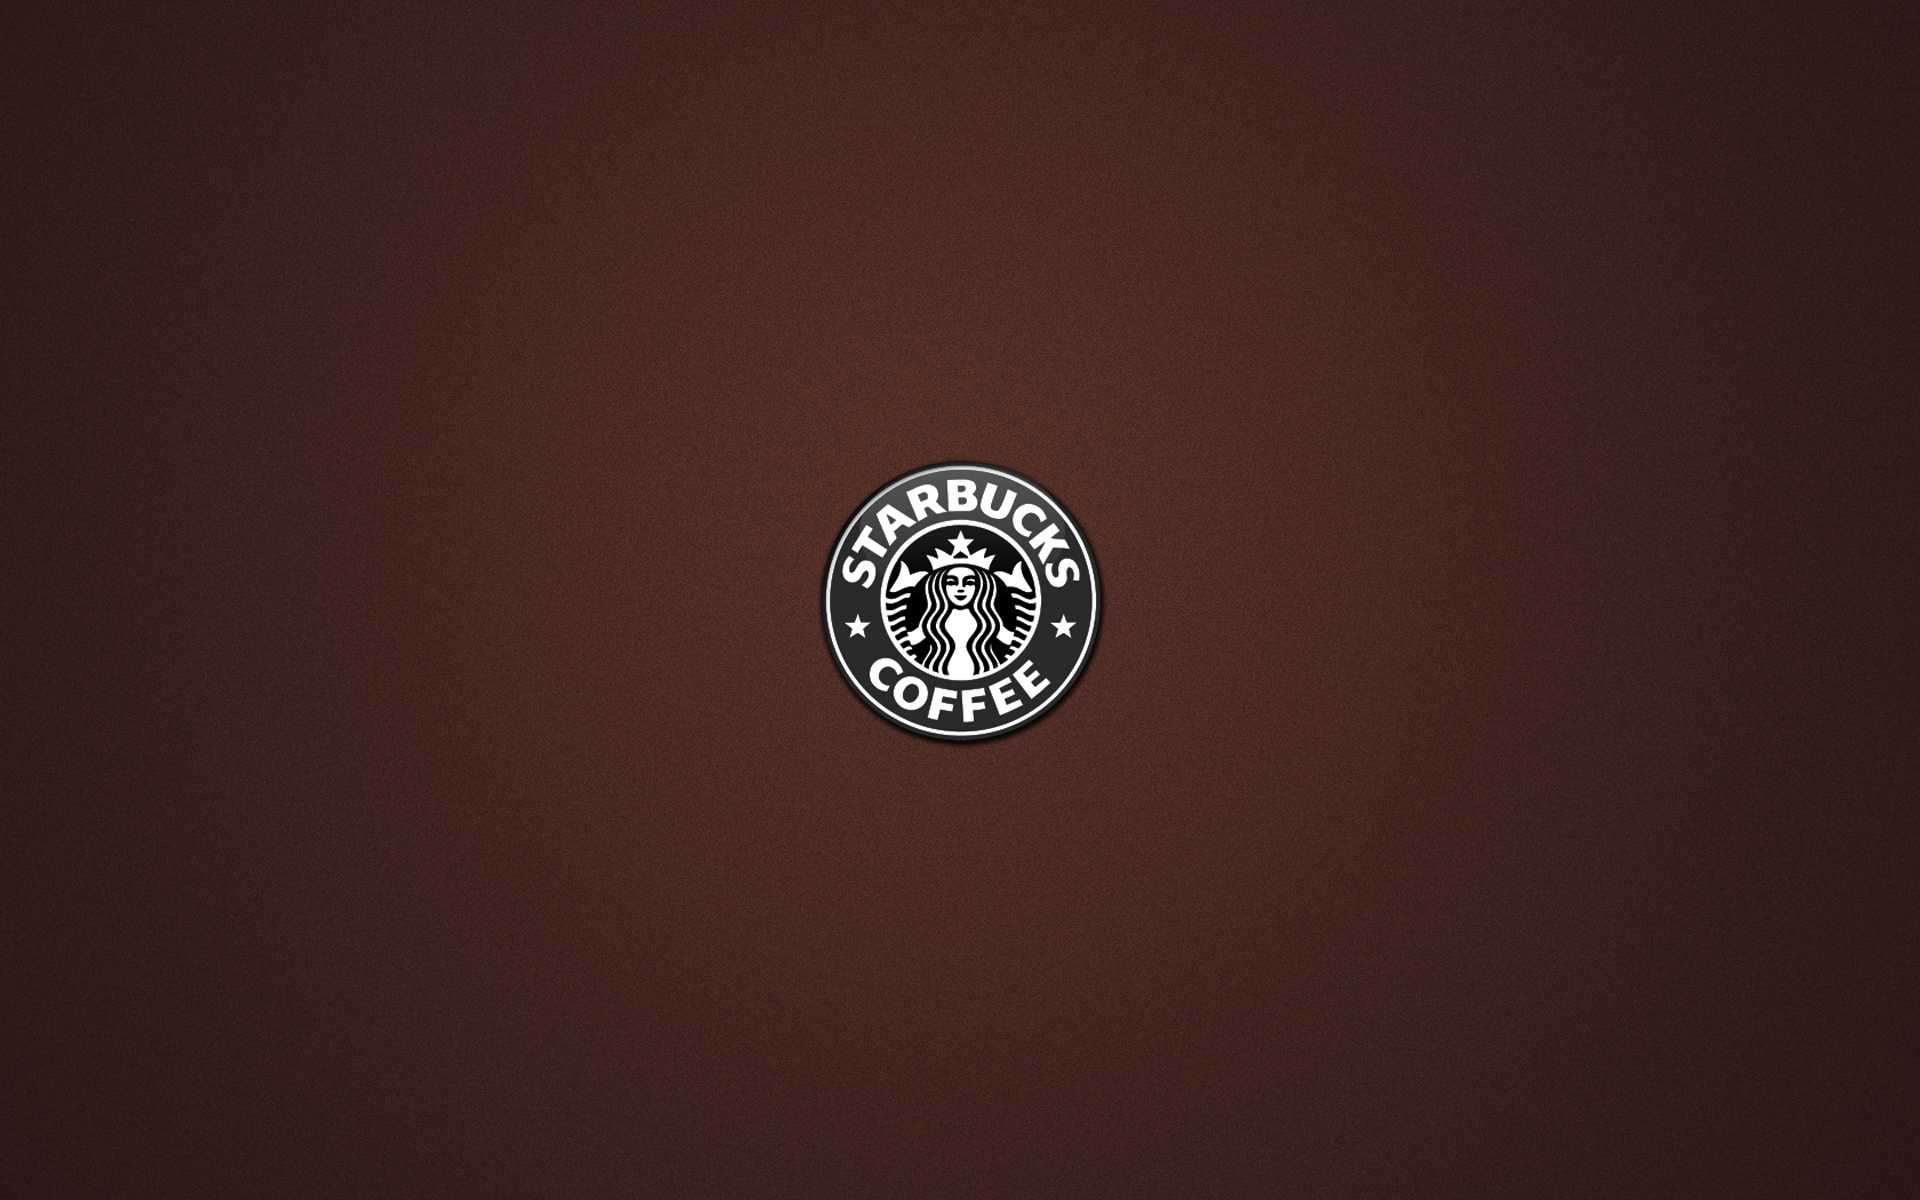 Starbucks Logo Backgrounds For Powerpoint Templates – Ppt Throughout Starbucks Powerpoint Template